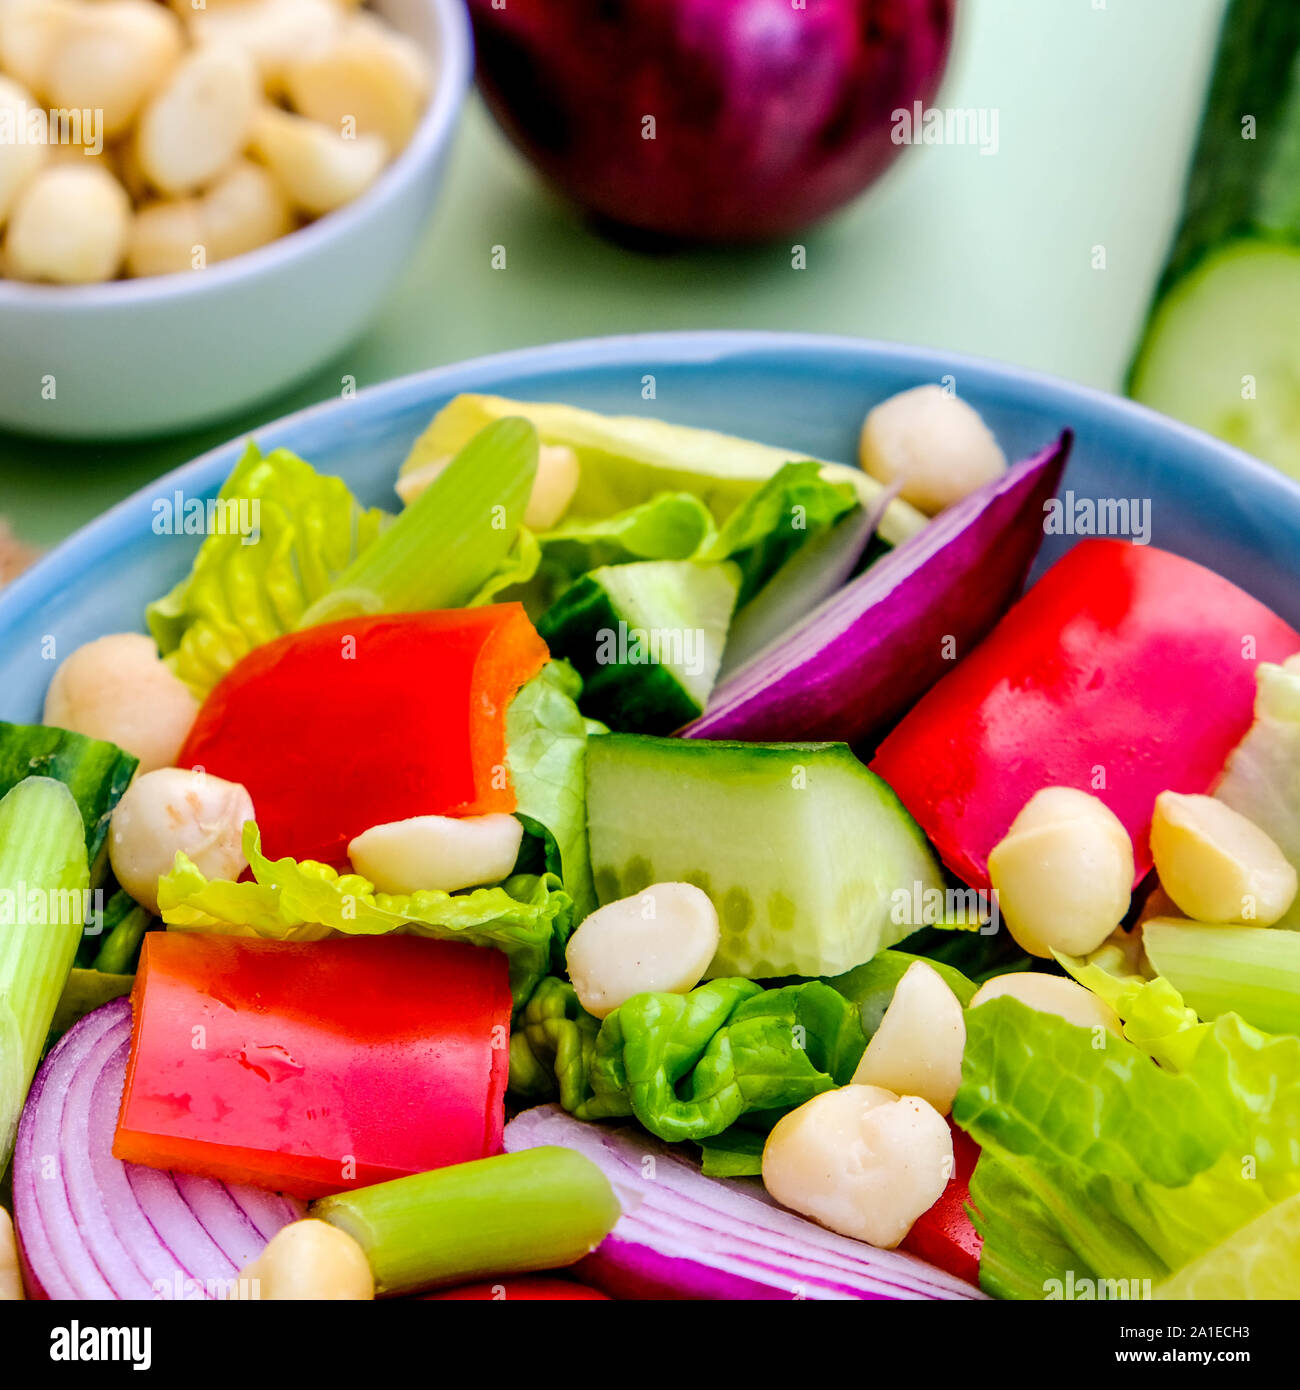 Gesunde vegetarische oder vegane Macadamianuss Salat mit Paprika, Chickory, Frühlingszwiebeln, Gem Salat und rote Zwiebel Stockfoto